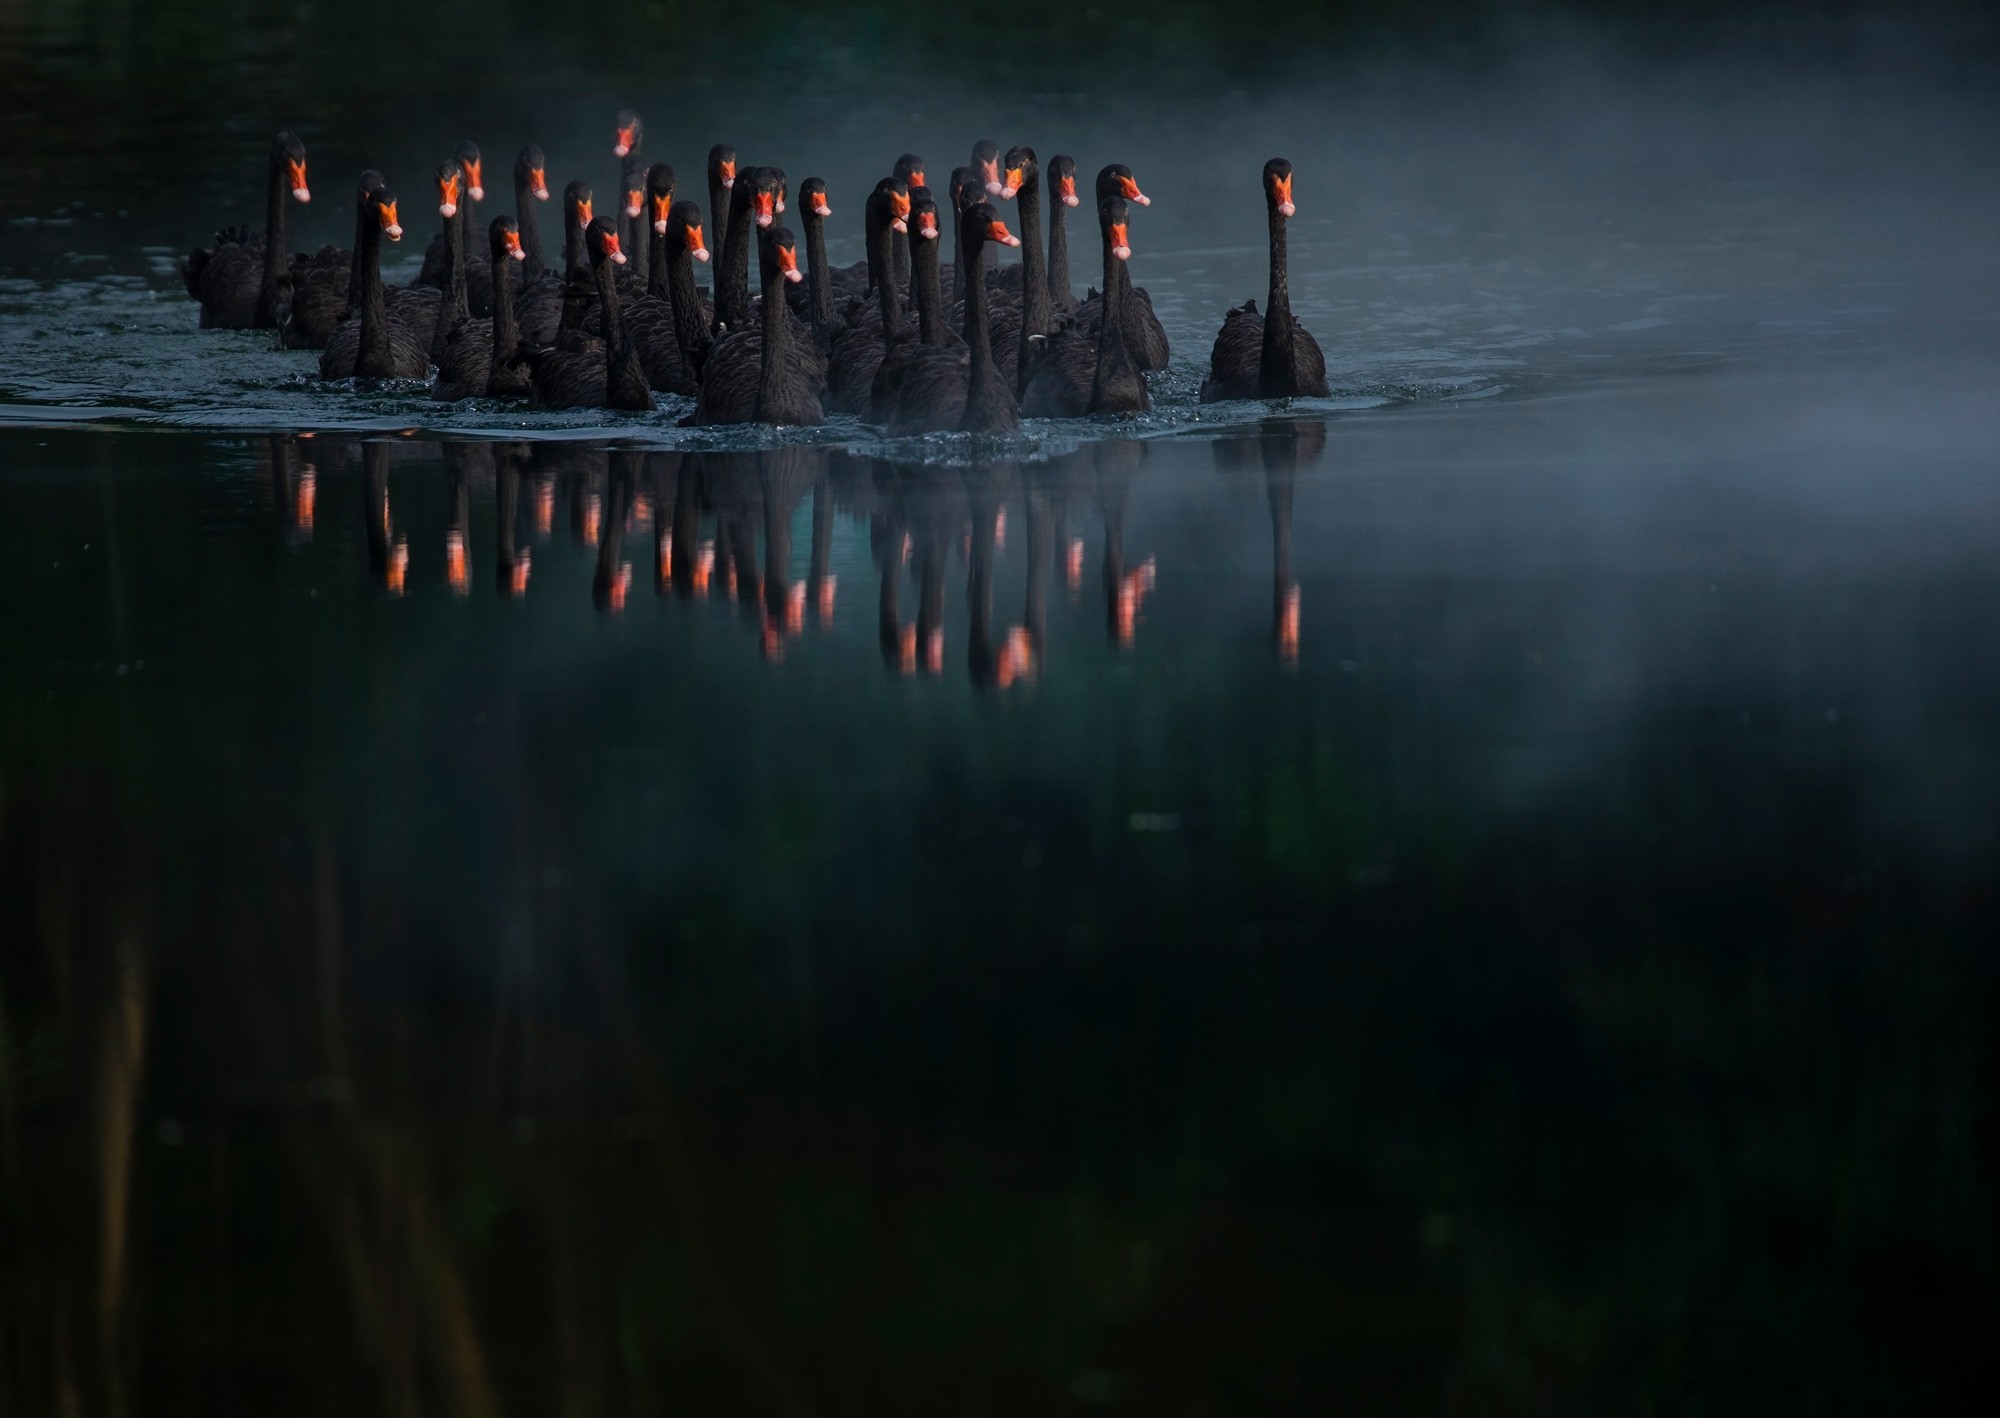 Финалист в категории Мир природы, 2019. Чёрные лебеди на озере в Китае. Автор Куан Чжэнь